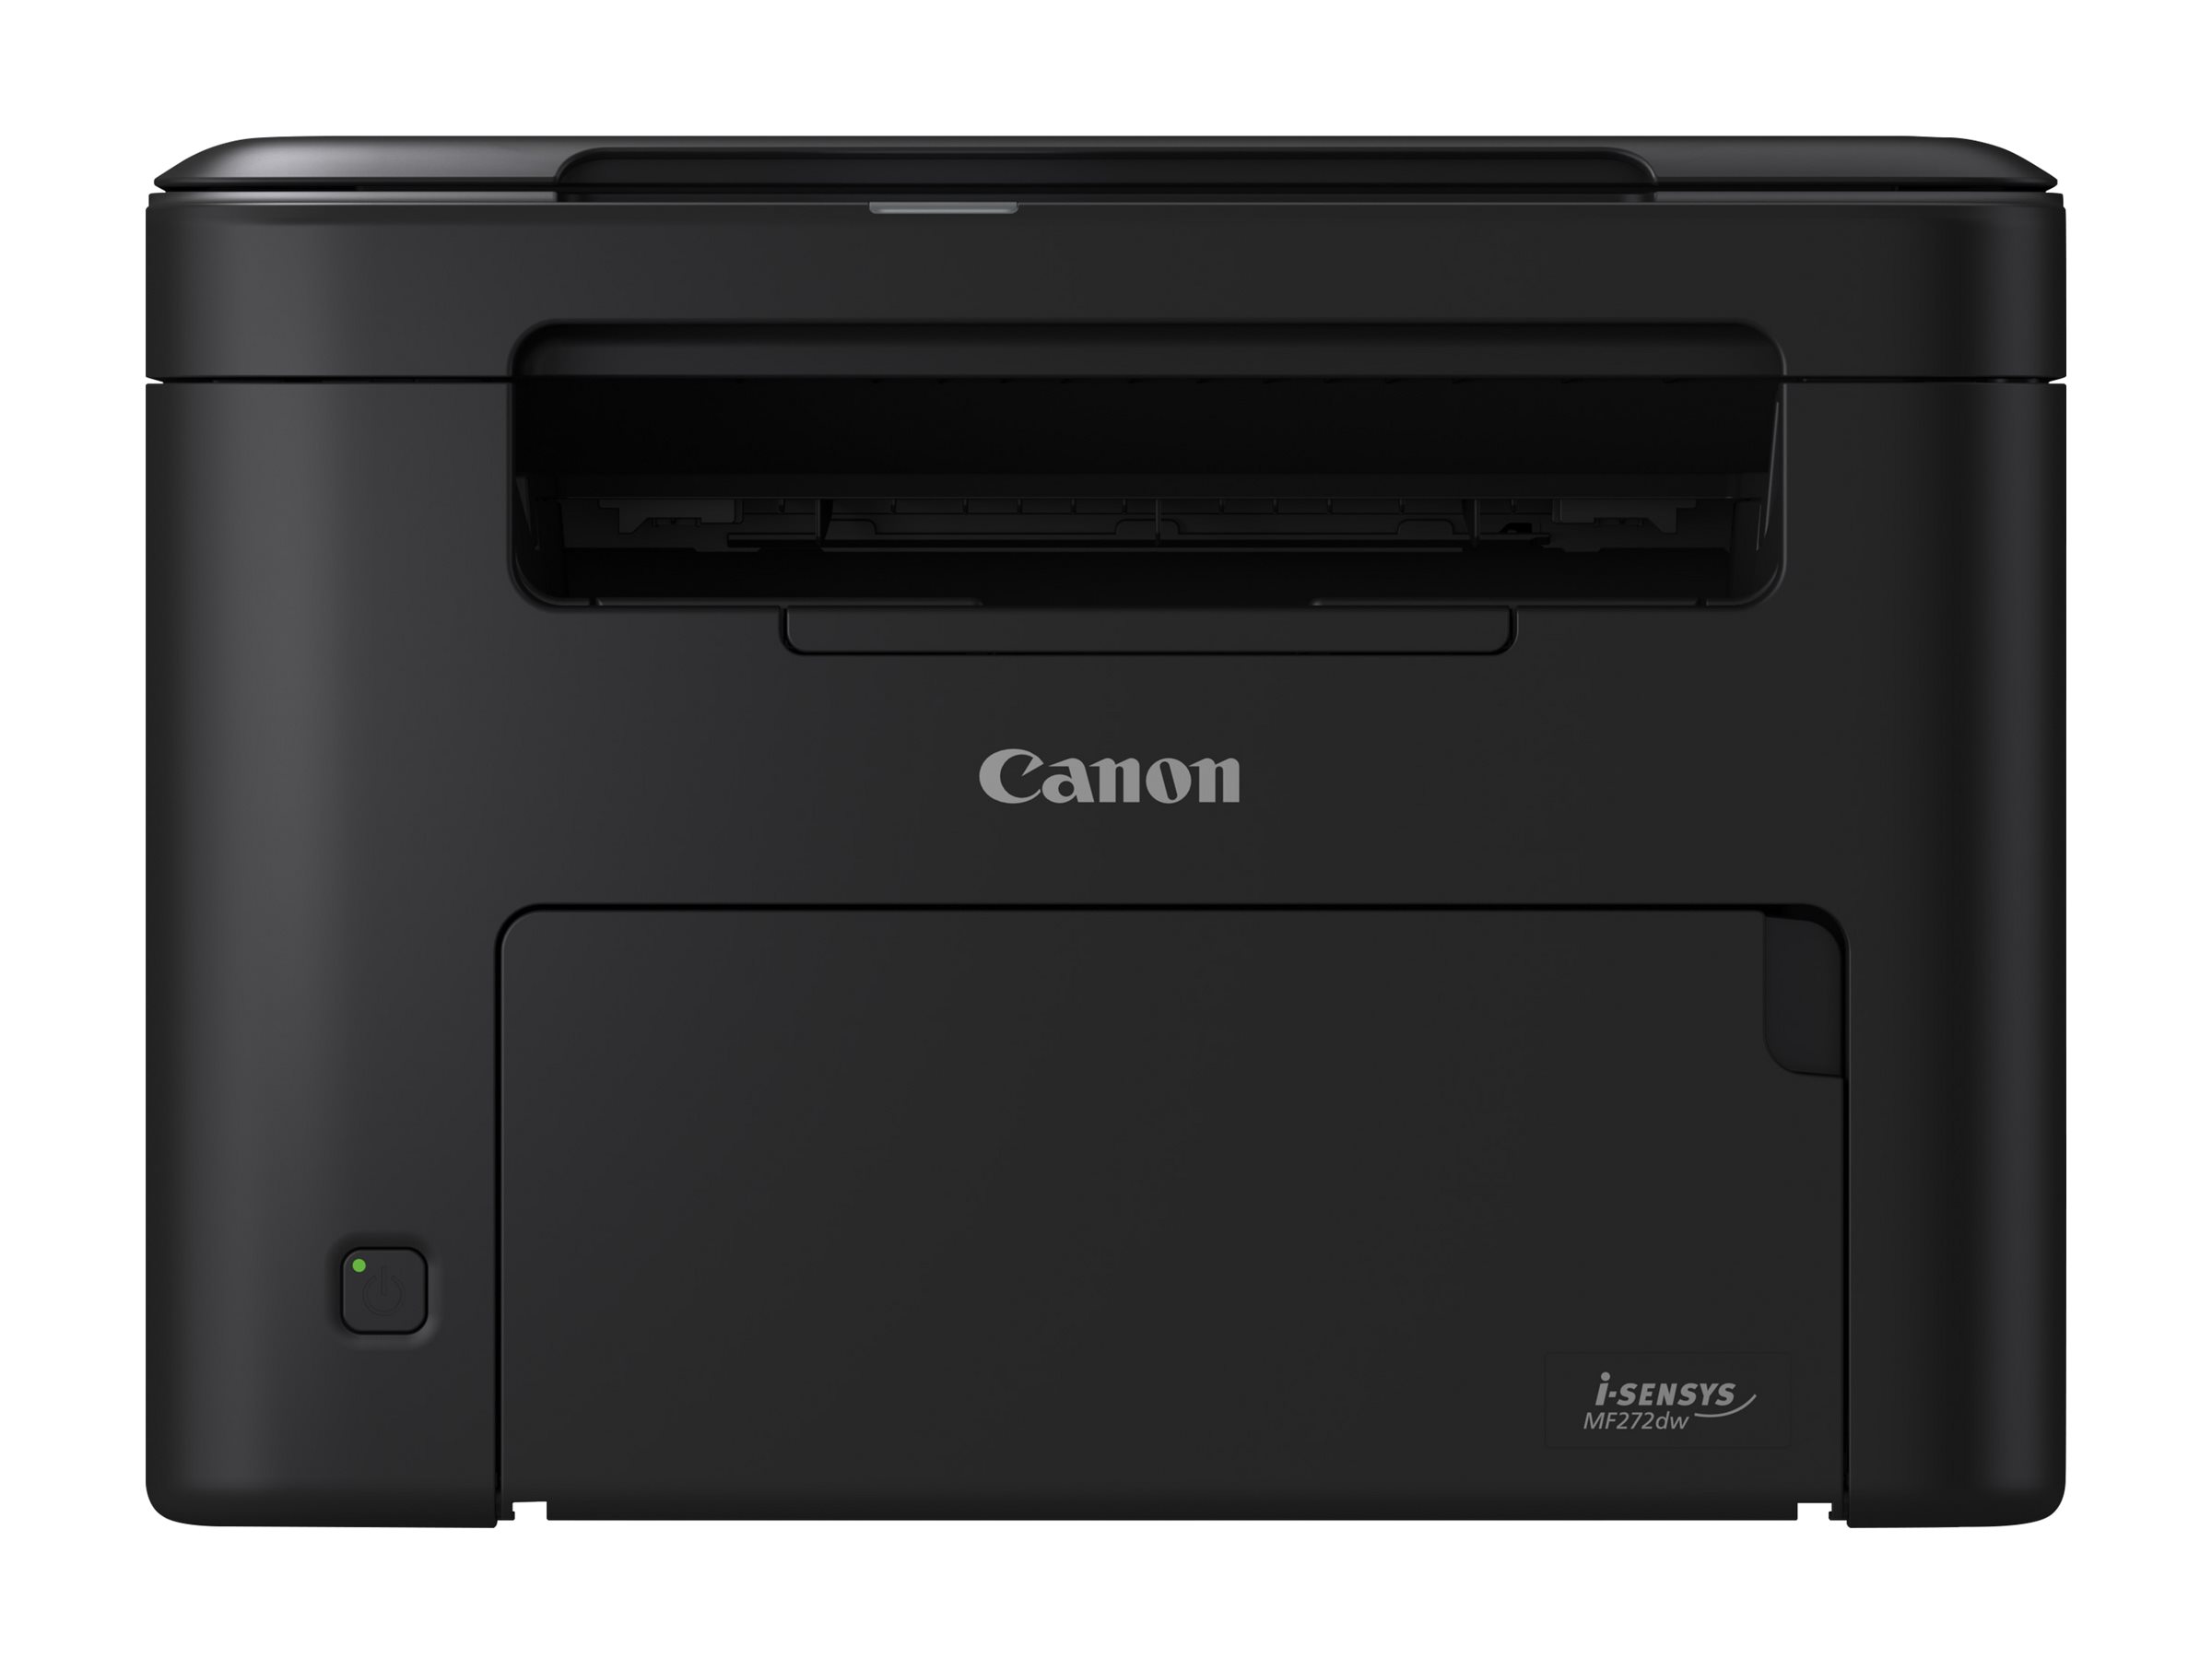 Canon i-SENSYS MF272dw - Imprimante multifonctions - Noir et blanc - laser - A4 (210 x 297 mm), Legal (216 x 356 mm) (original) - A4/Legal (support) - jusqu'à 29 ppm (copie) - jusqu'à 29 ppm (impression) - 150 feuilles - USB 2.0, LAN, Wi-Fi(n) - 5621C013 - Imprimantes multifonctions